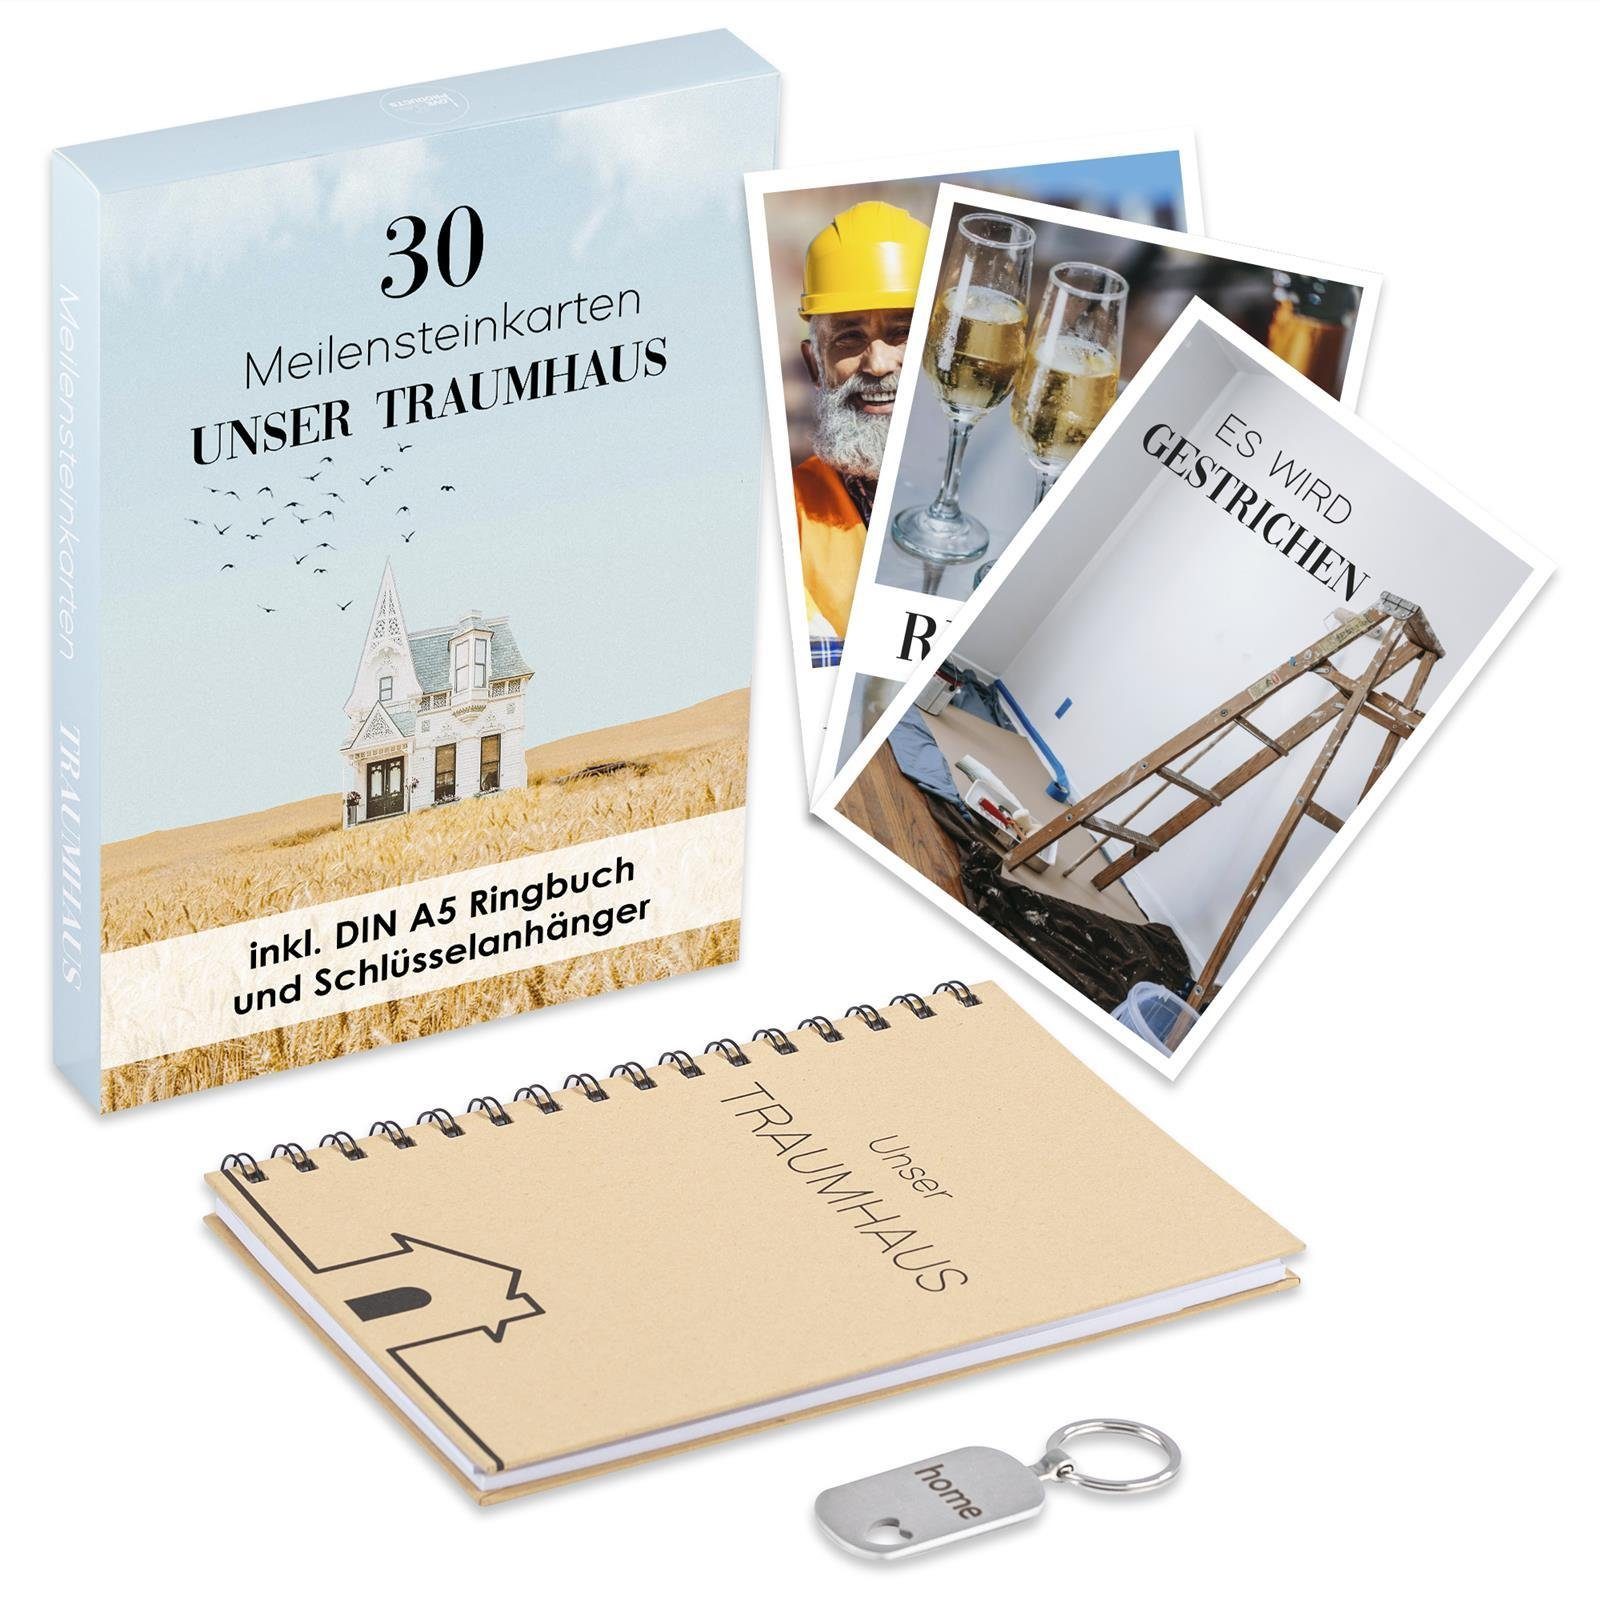 Postkarte Inkl. Ringbuch Hausbau Schlüsselanhänger (wp), modern Meilensteinkarten ILP und ILP